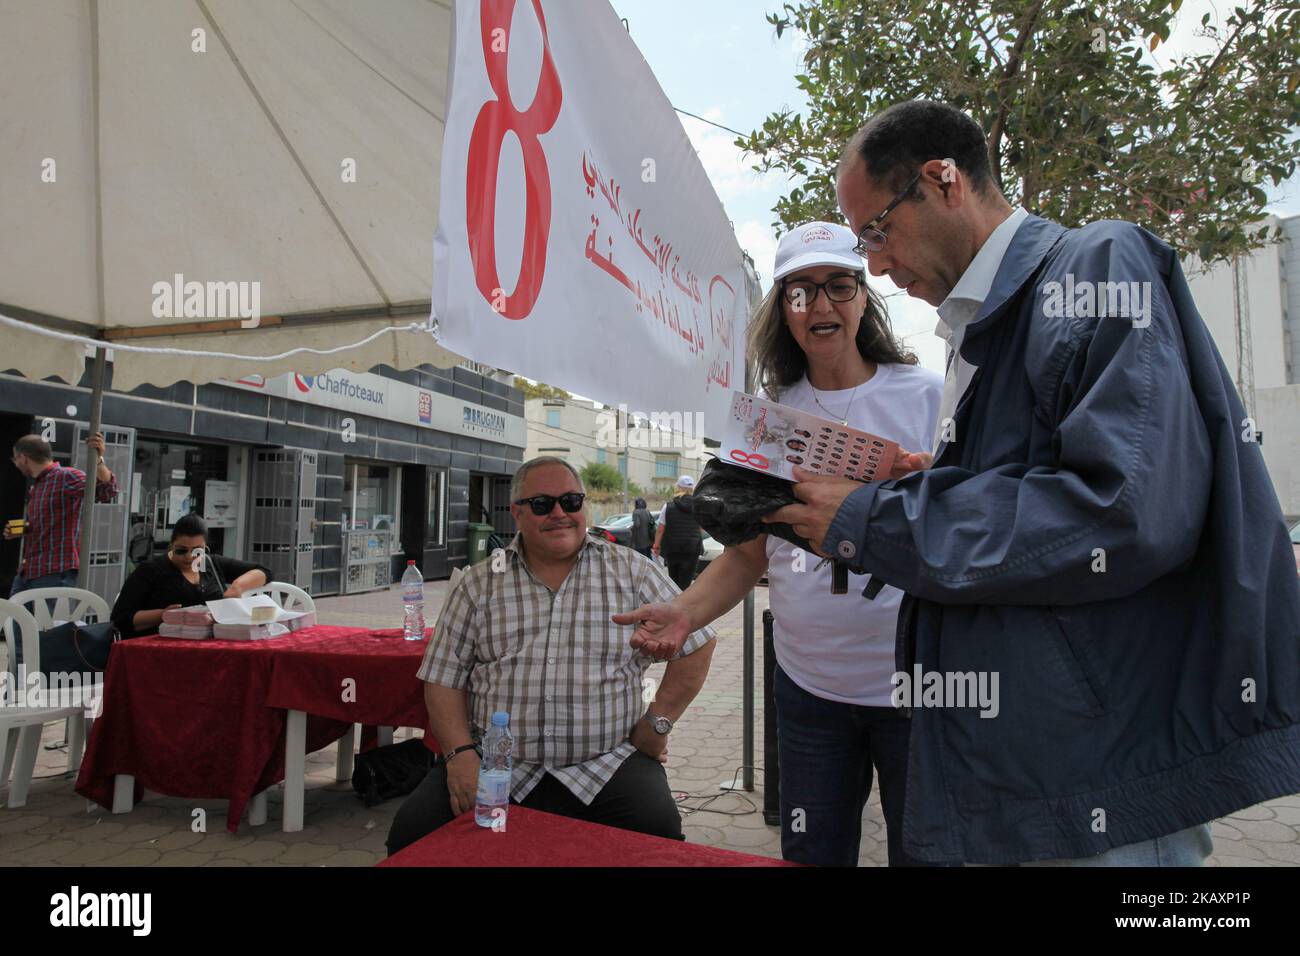 Una donna sostenitrice dell'Unione civile, una coalizione politica di 11 partiti, presenta il programma elettorale ad un tunisino all'interno di una tenda promozionale installata in strada nel Governatorato di Ariana, nel nord-est della Tunisia, il 28 aprile 2018, come campagna di sostenitori per le elezioni comunali. I tunisini si dirigeranno ai sondaggi il 6 maggio per votare alle prime elezioni comunali libere del paese dopo la rimozione del presidente Zine El Abidine ben Ali e del suo governo nel 2011. (Foto di Chardy ben Ibrahim/NurPhoto) Foto Stock